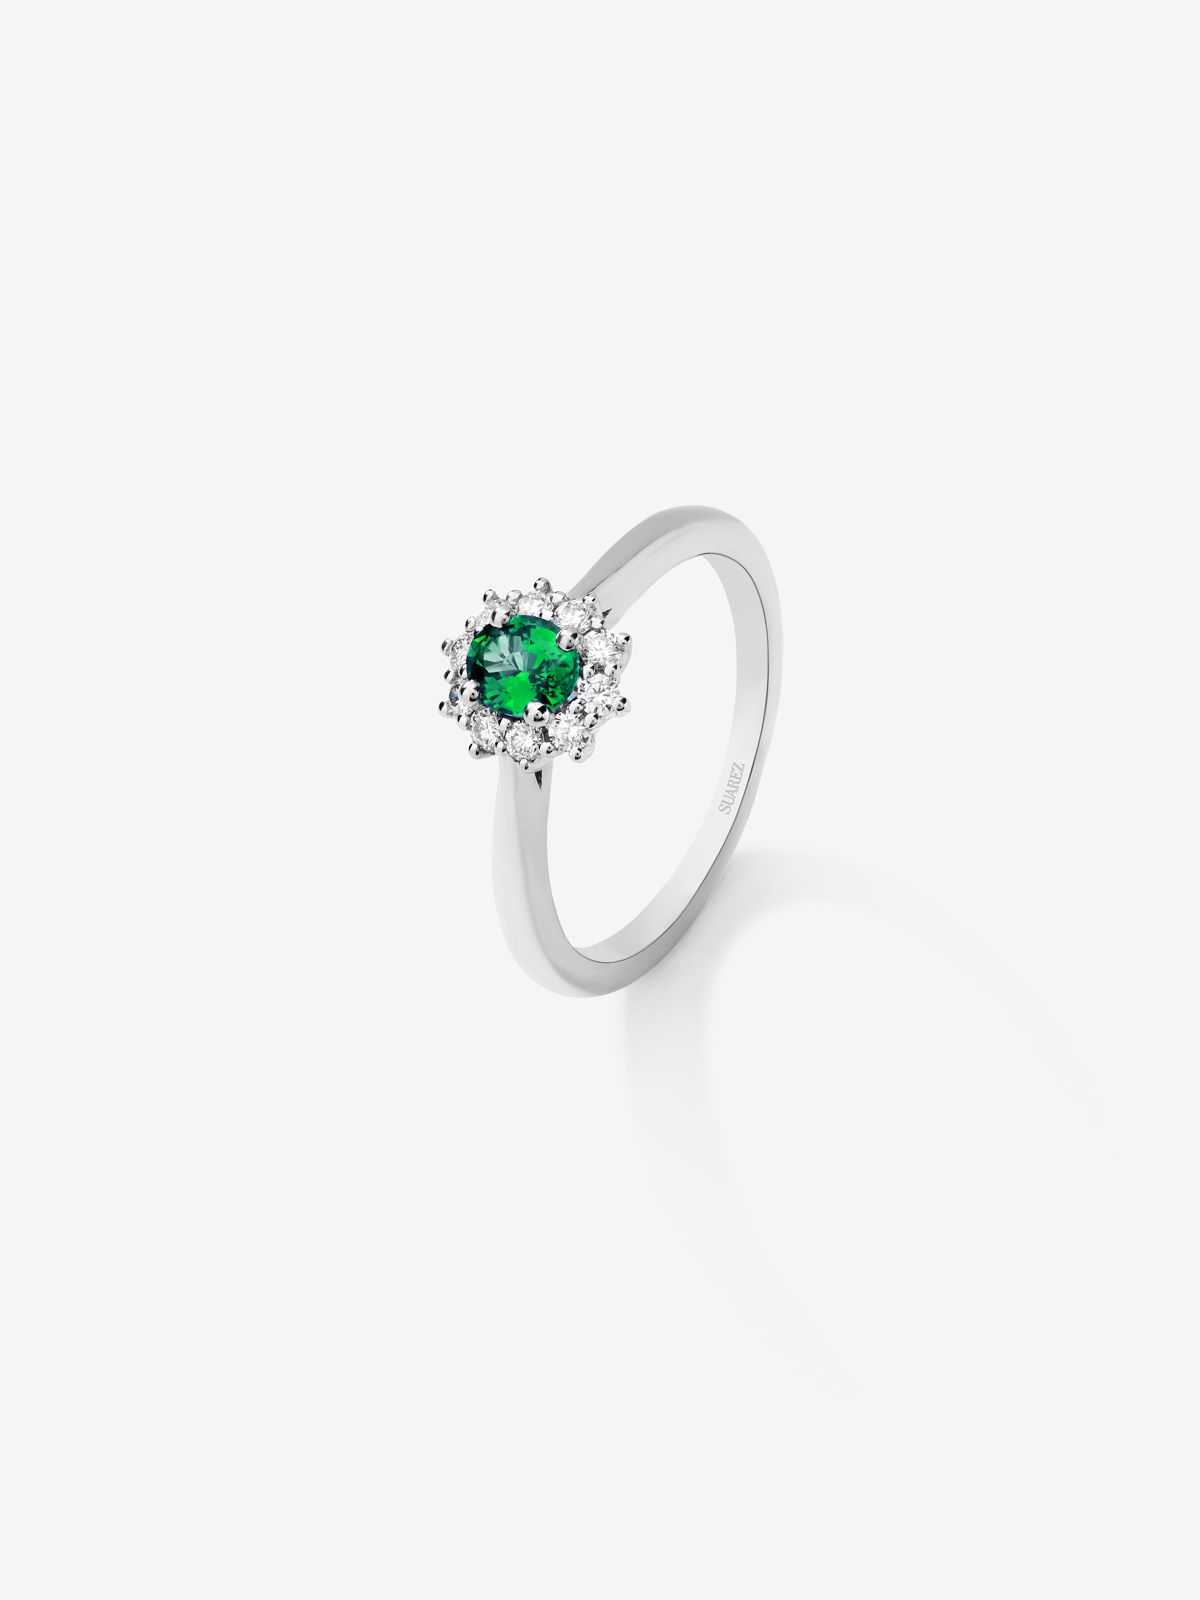 Anillo de oro blanco de 18K con esmeralda verde en talla oval y diamantes blancos en talla brillante